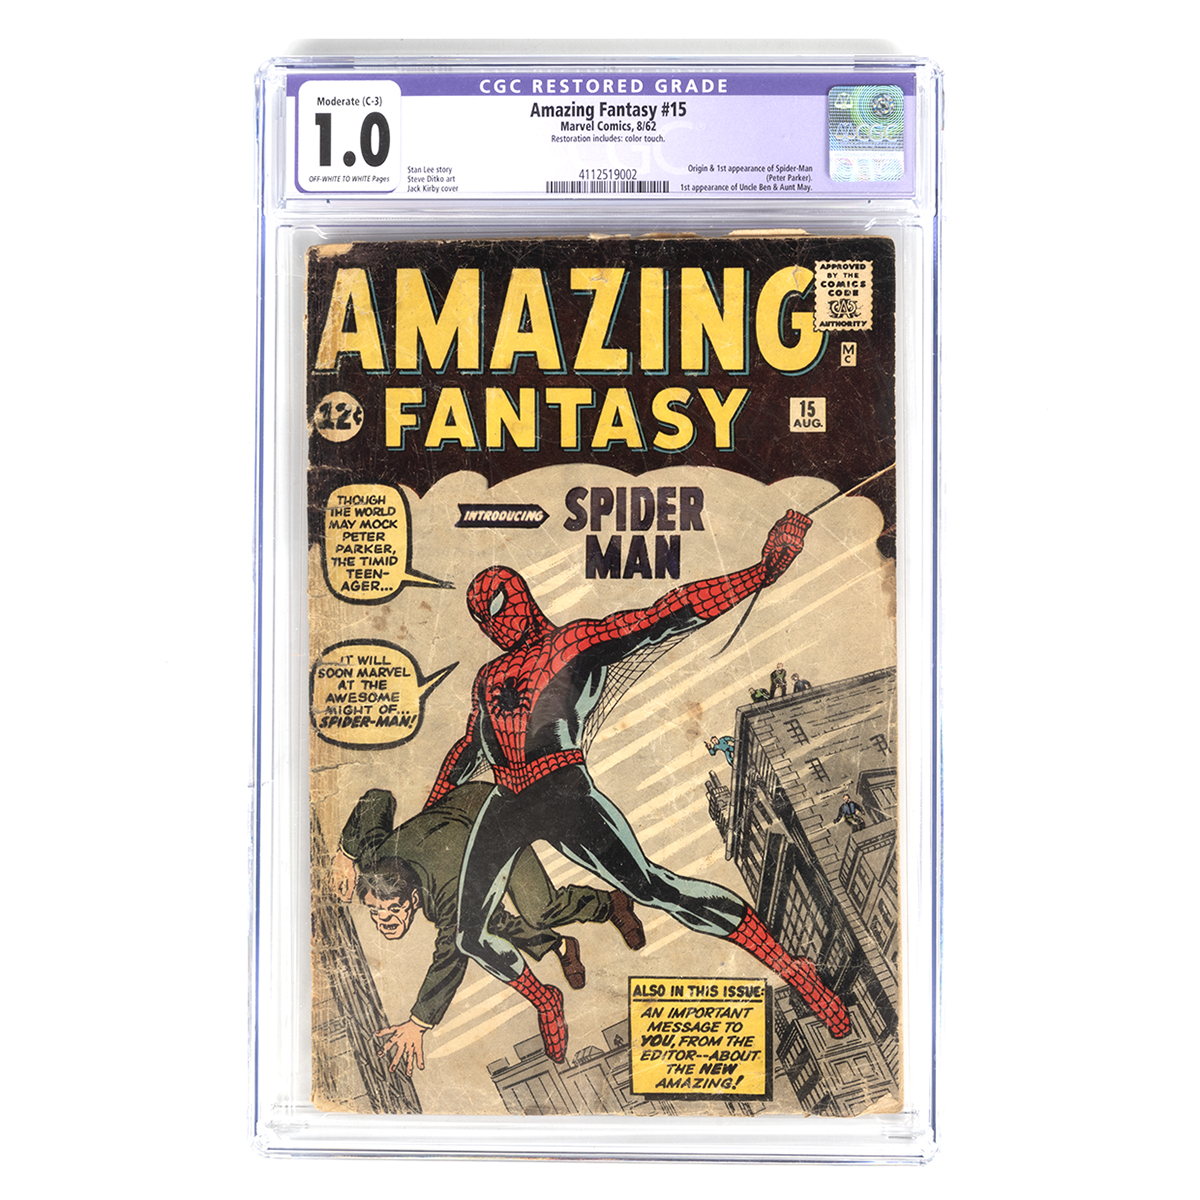 Michaan's Auctions
April 17 Collectibles Auction | 10 am
Amazing Fantasy #15.
Estimate $15,000/20,000
#michaans #auctions #comics #comicbooks #vintagecomicbooks #spidermanamazingfantasy